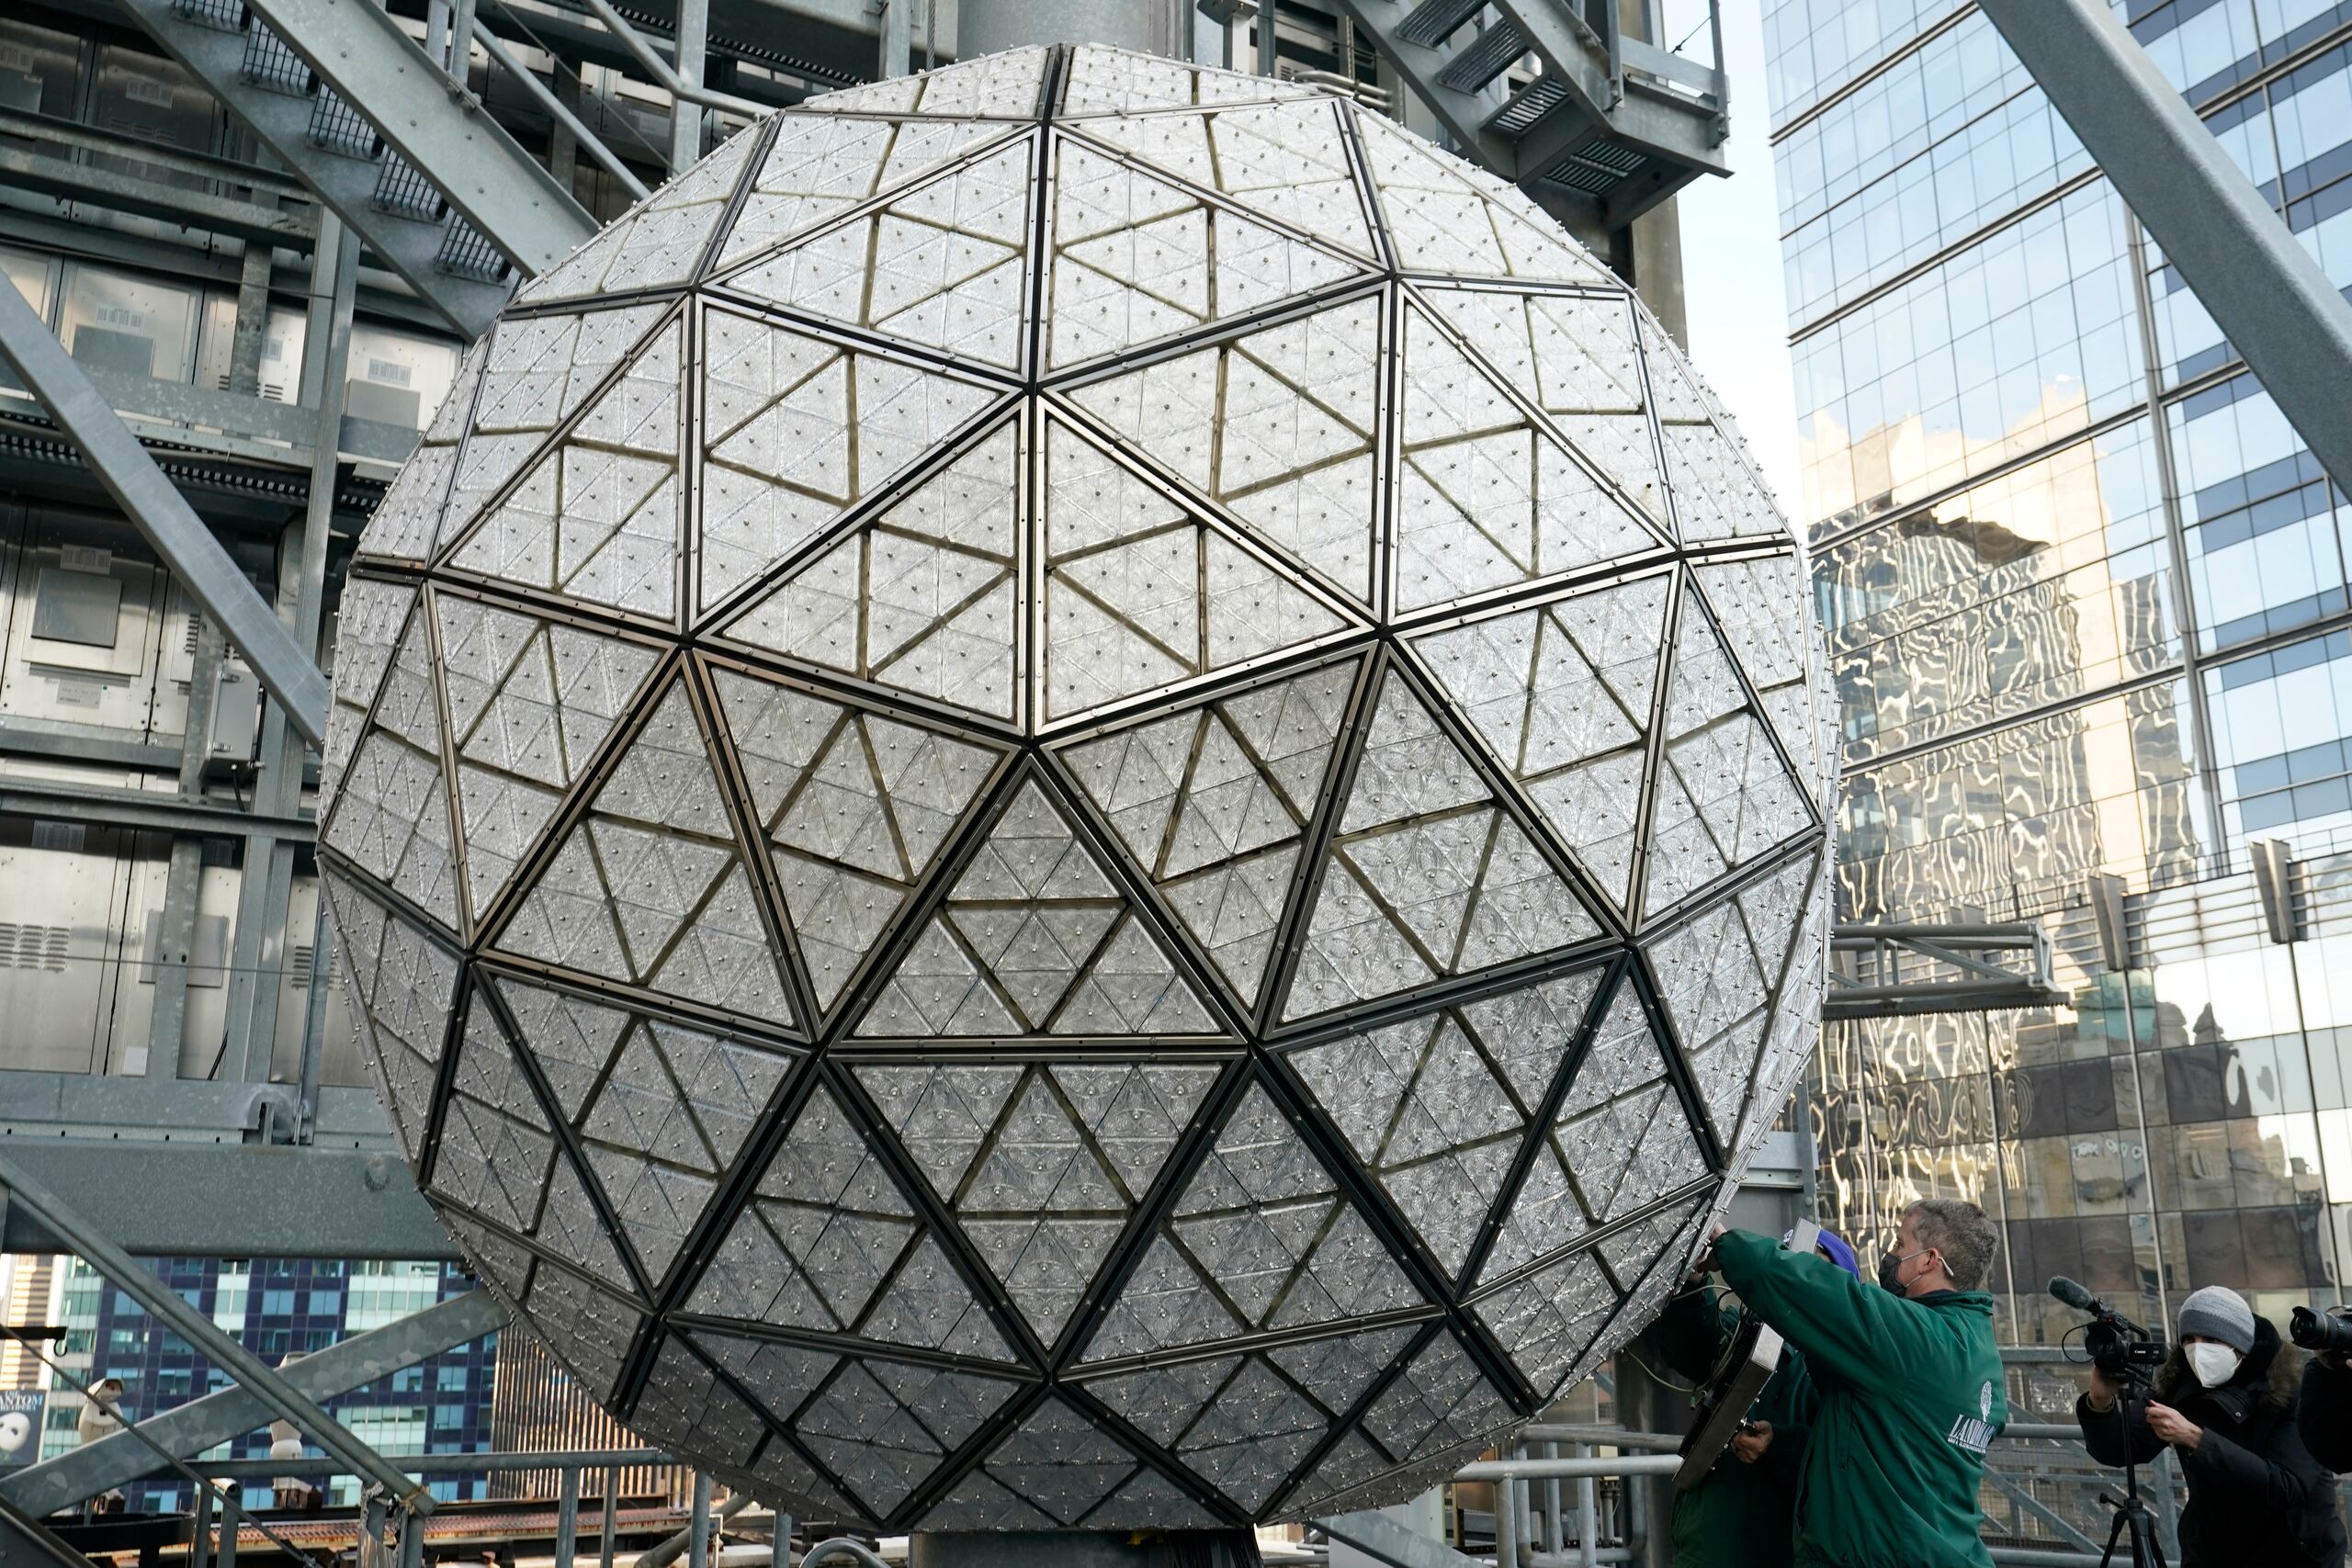 La bola está compuesta por 2,668 triángulos de cristal.